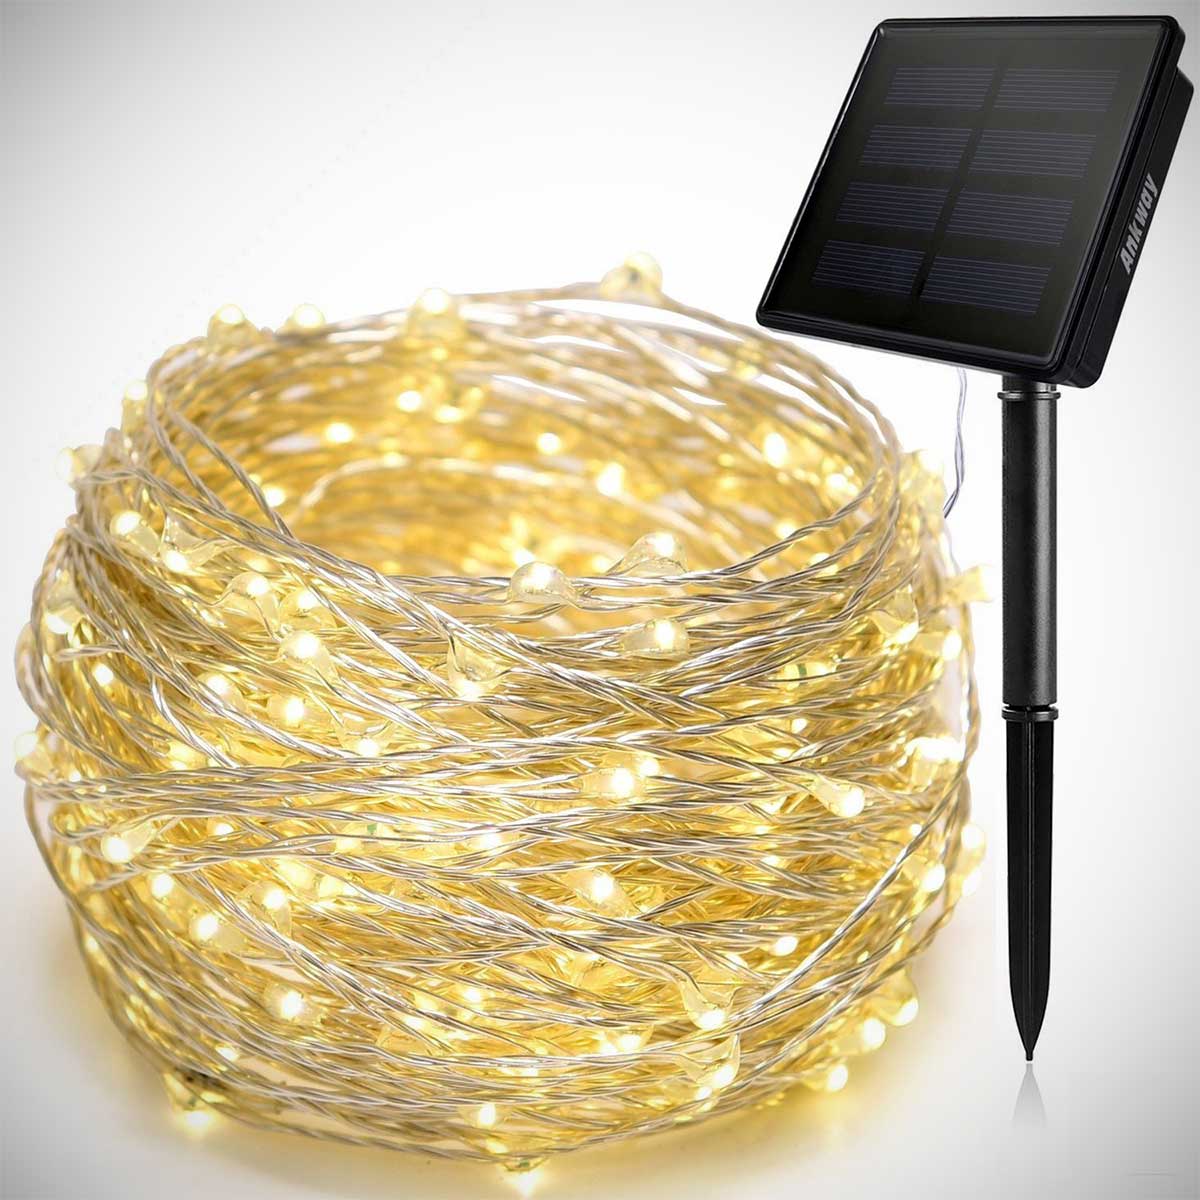 Details about   GloBrite 50 200 LED Copper String Solar Lights